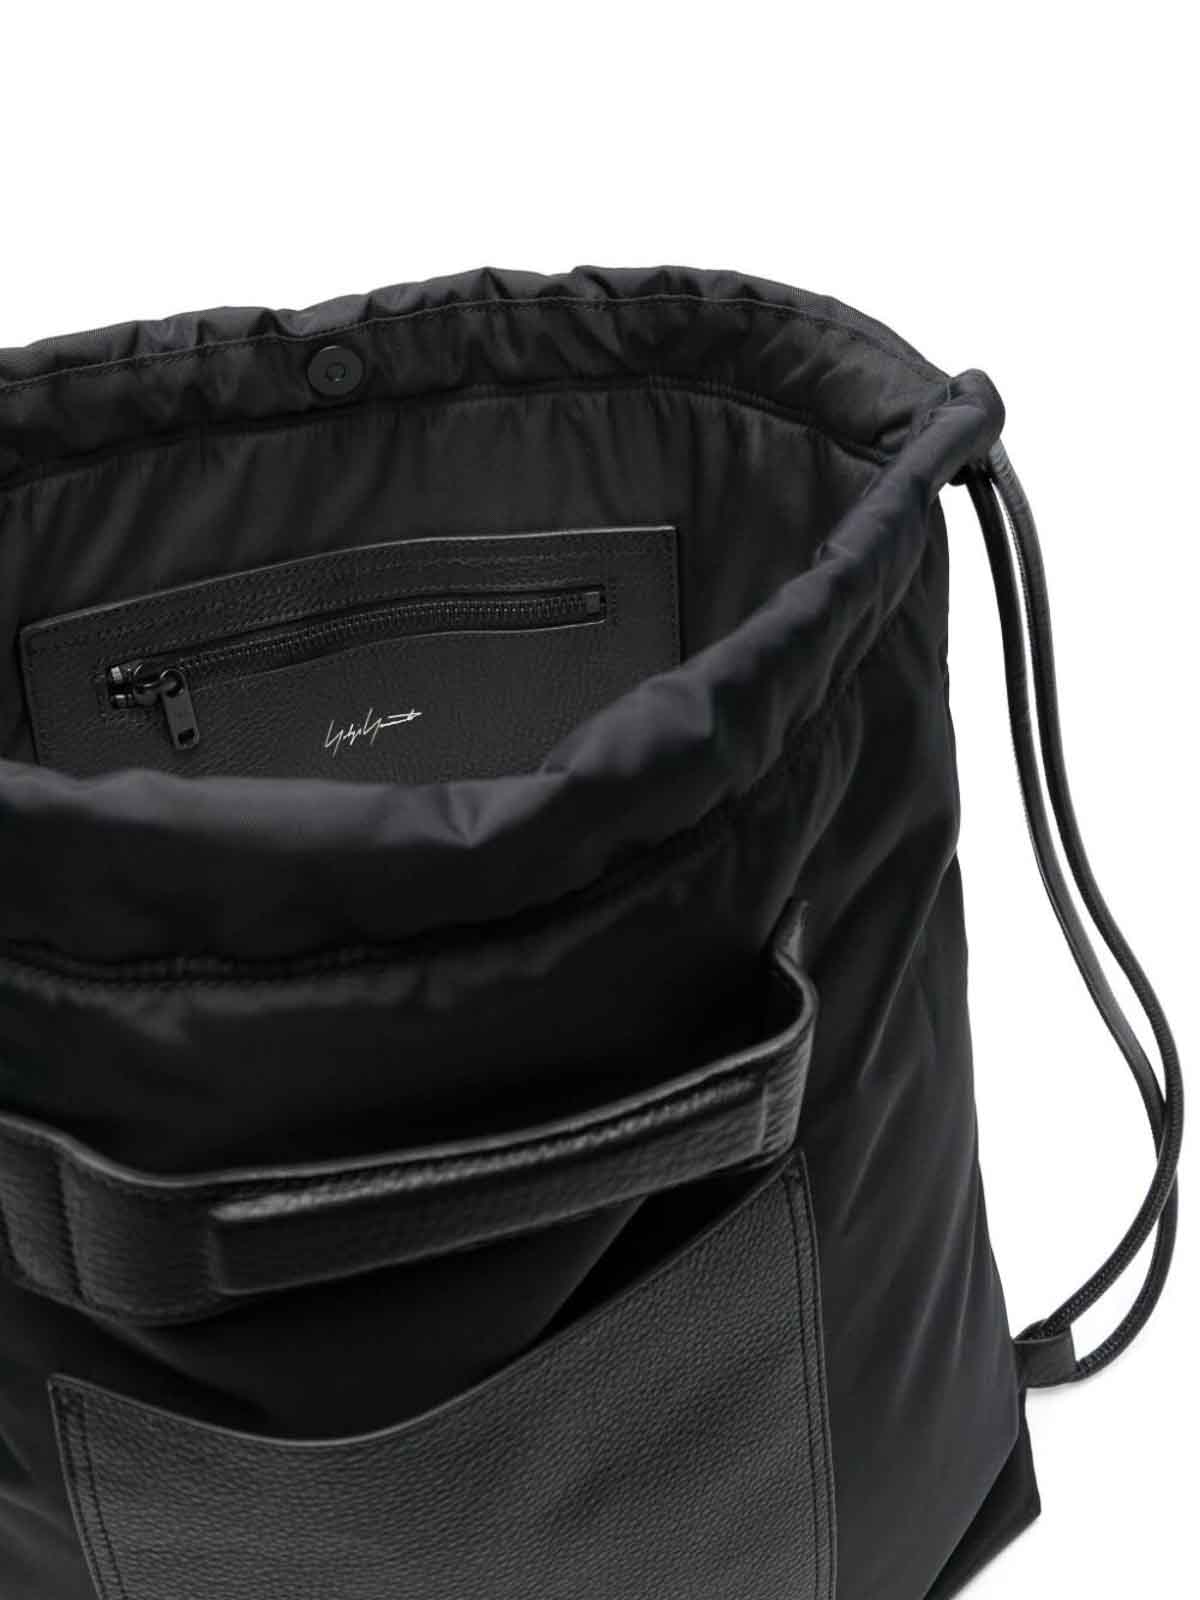 Shop Y-3 Lux Gym Bag In Black